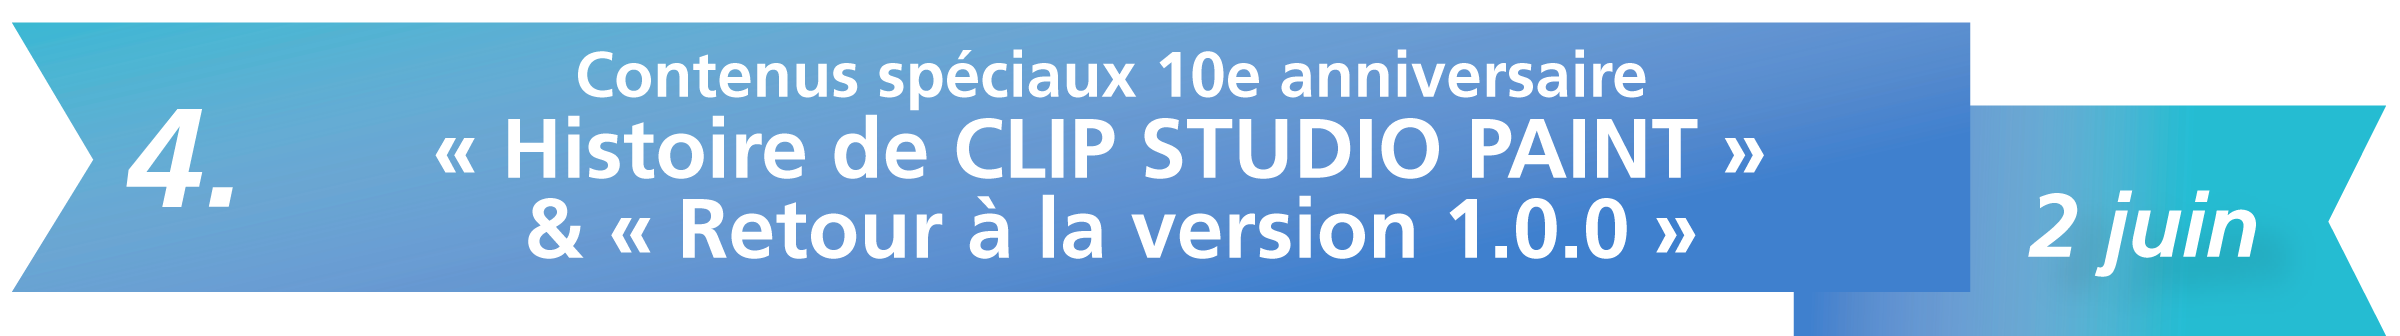 4. Contenus spéciaux 10e anniversaire « Histoire de CLIP STUDIO PAINT » & « Retour à la version 1.0.0 » - 2 juin